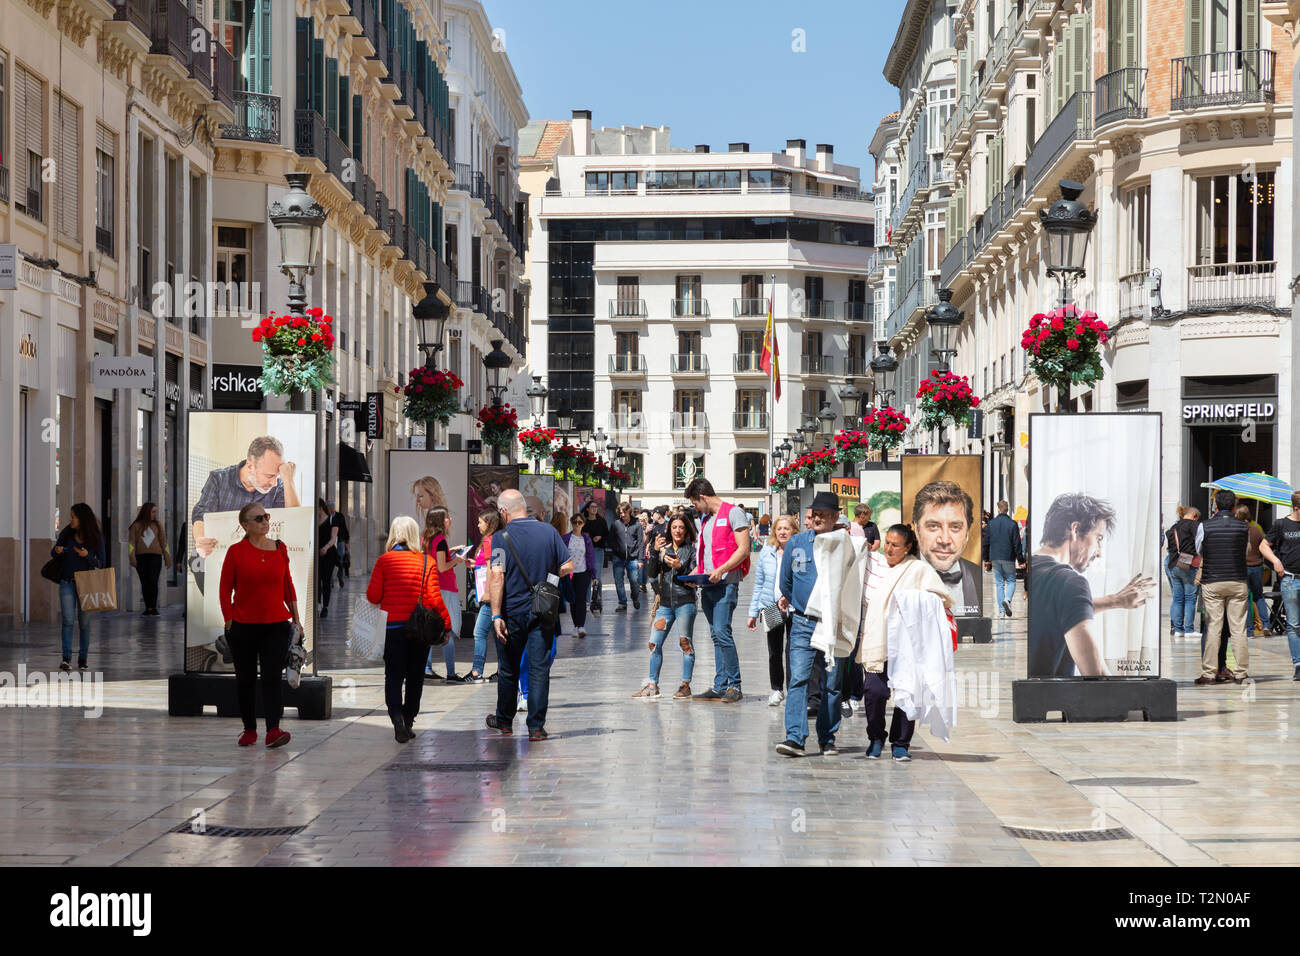 Centro de la ciudad de Málaga - gente de compras, la Calle Marqués de Larios Street Scene, casco antiguo de Málaga, Málaga, Andalucía, España Foto de stock